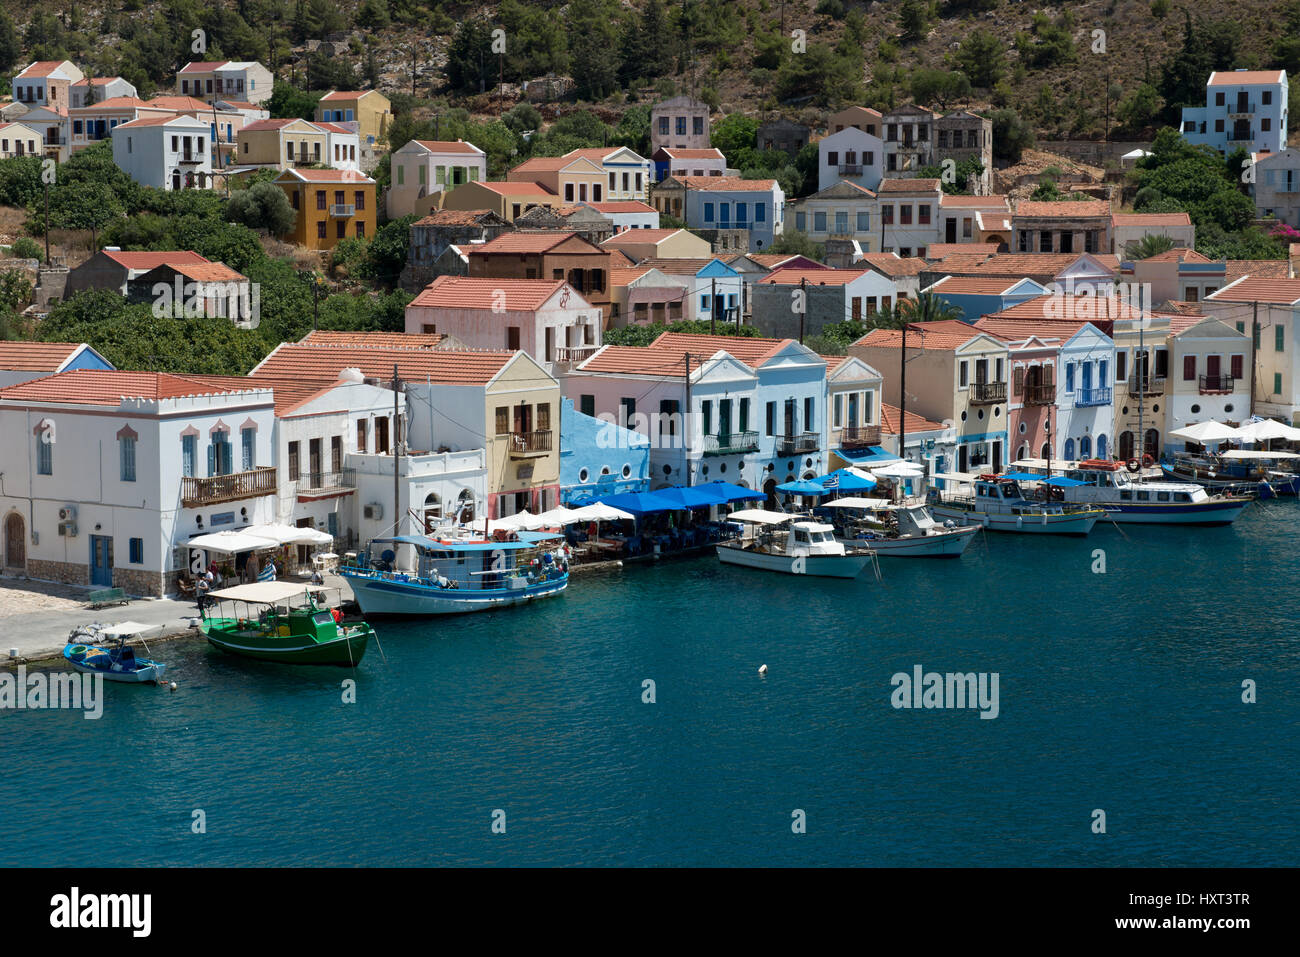 Hafenbecken mit kleinen Booten und einer Reihe von bunten Häusern vor grünem Wasser, Insel Kastellorizo, Dodekanes, Griechenland Foto Stock